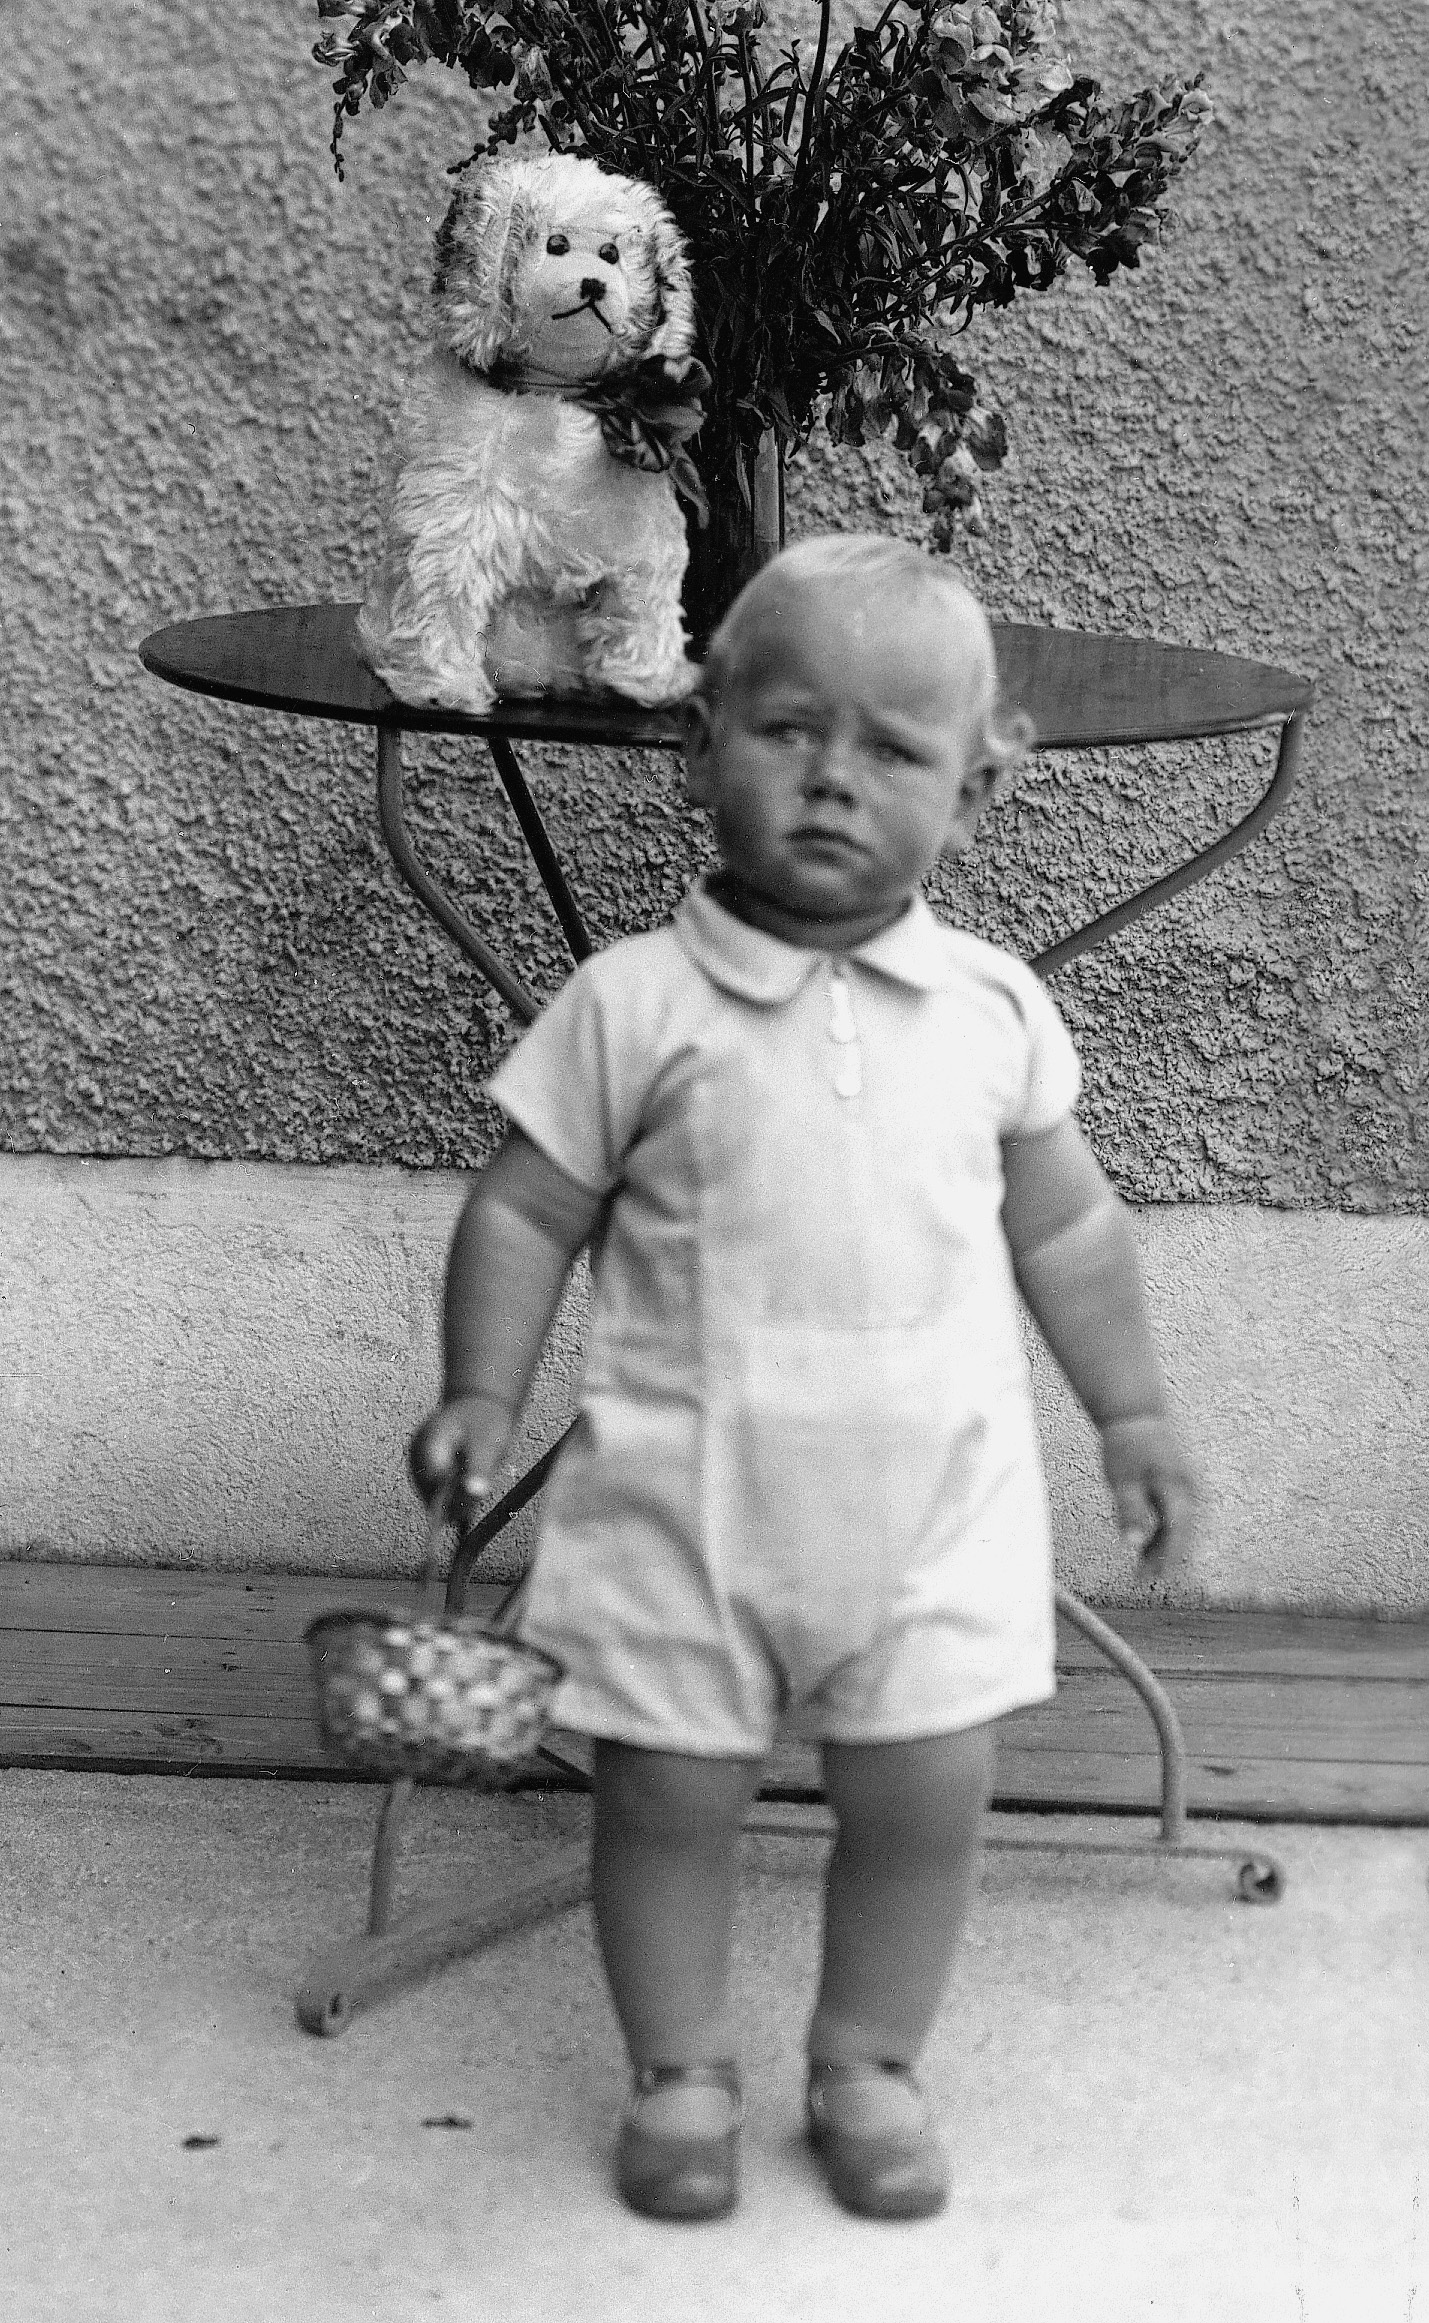 Das Bild ist schwarz-weiß und zeigt den Gründer der Weltethos Stiftung Hans Küng als Kleinkind stehend vor einem Gartentisch.